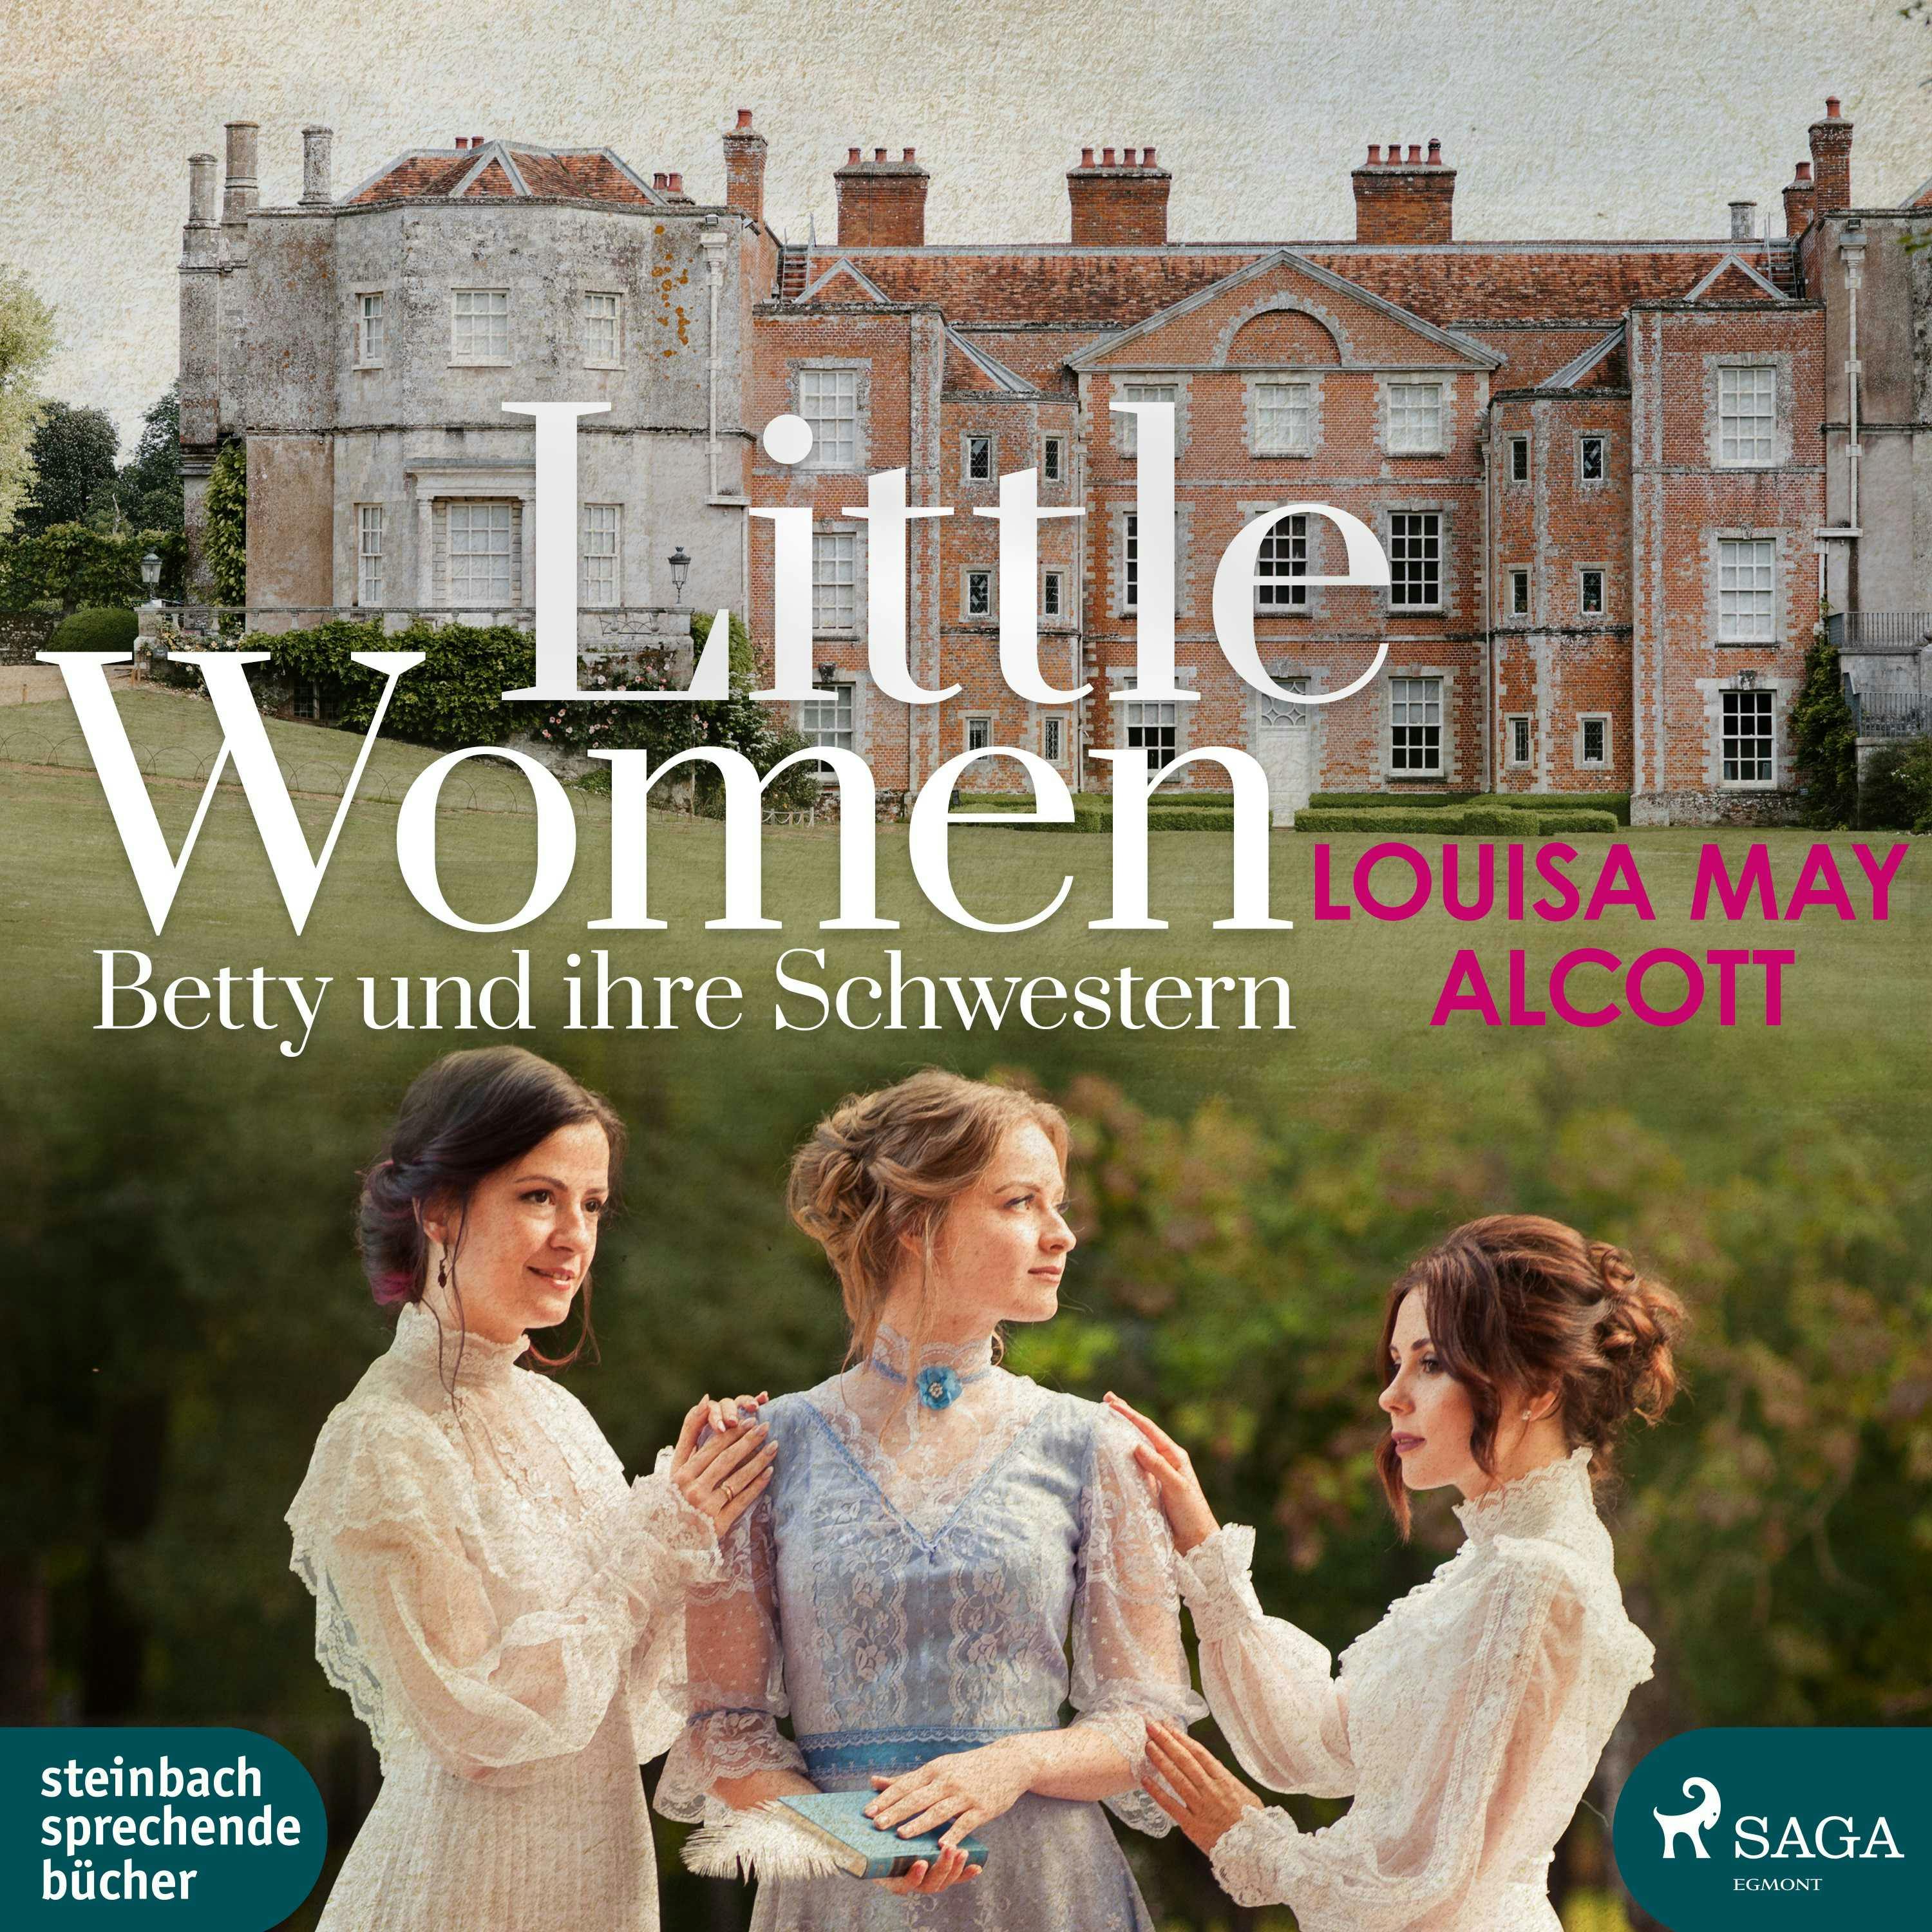 Little Women - Betty und ihre Schwestern - Louisa May Alcott